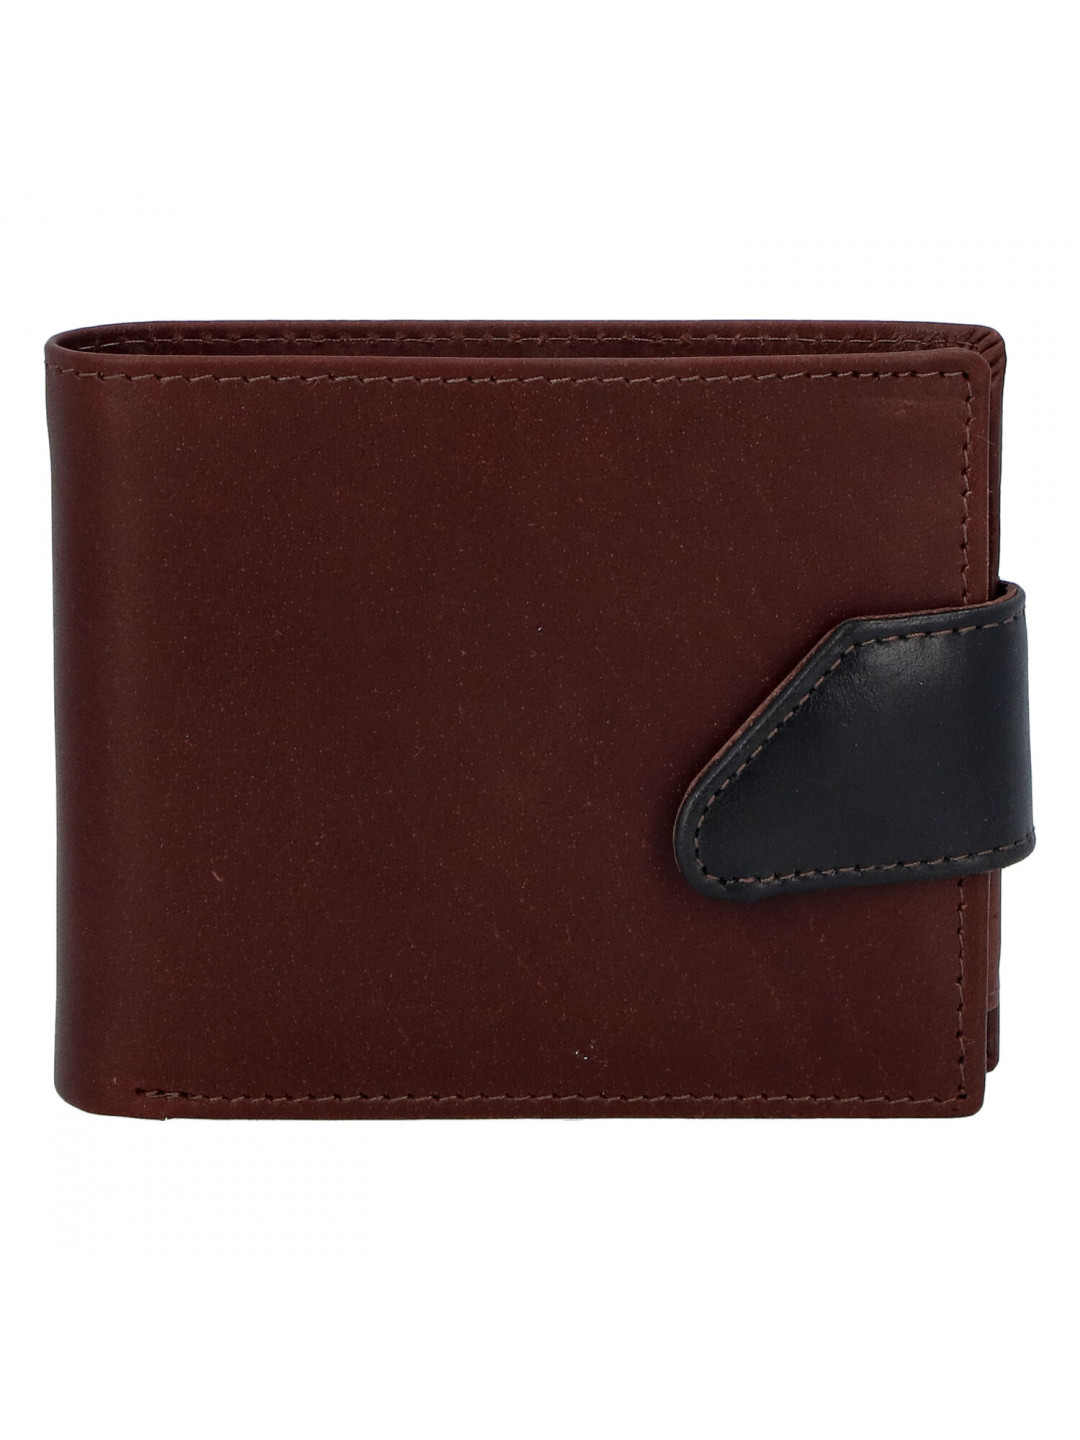 Hladká pánská hnědá kožená peněženka – Tomas 76VT